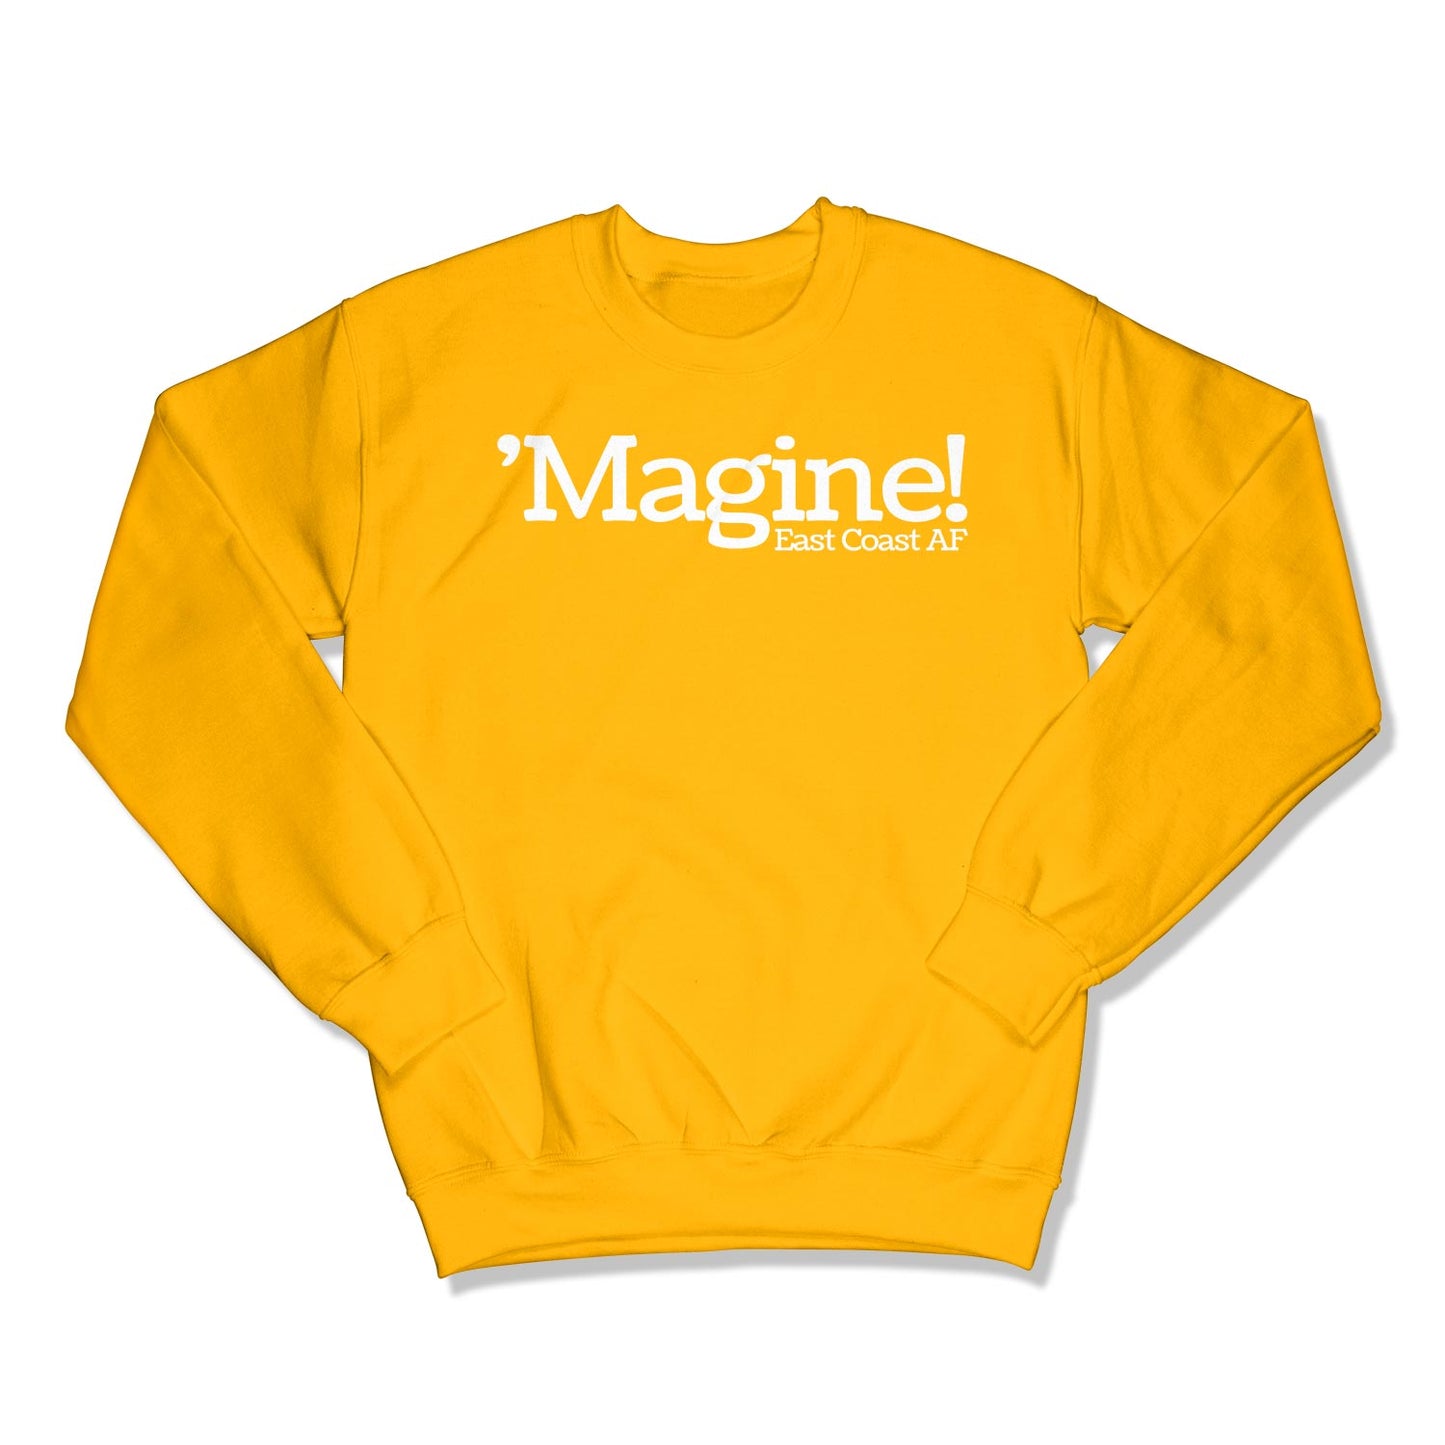 'Magine! Unisex Crewneck Sweatshirt in Color: Gold - East Coast AF Apparel